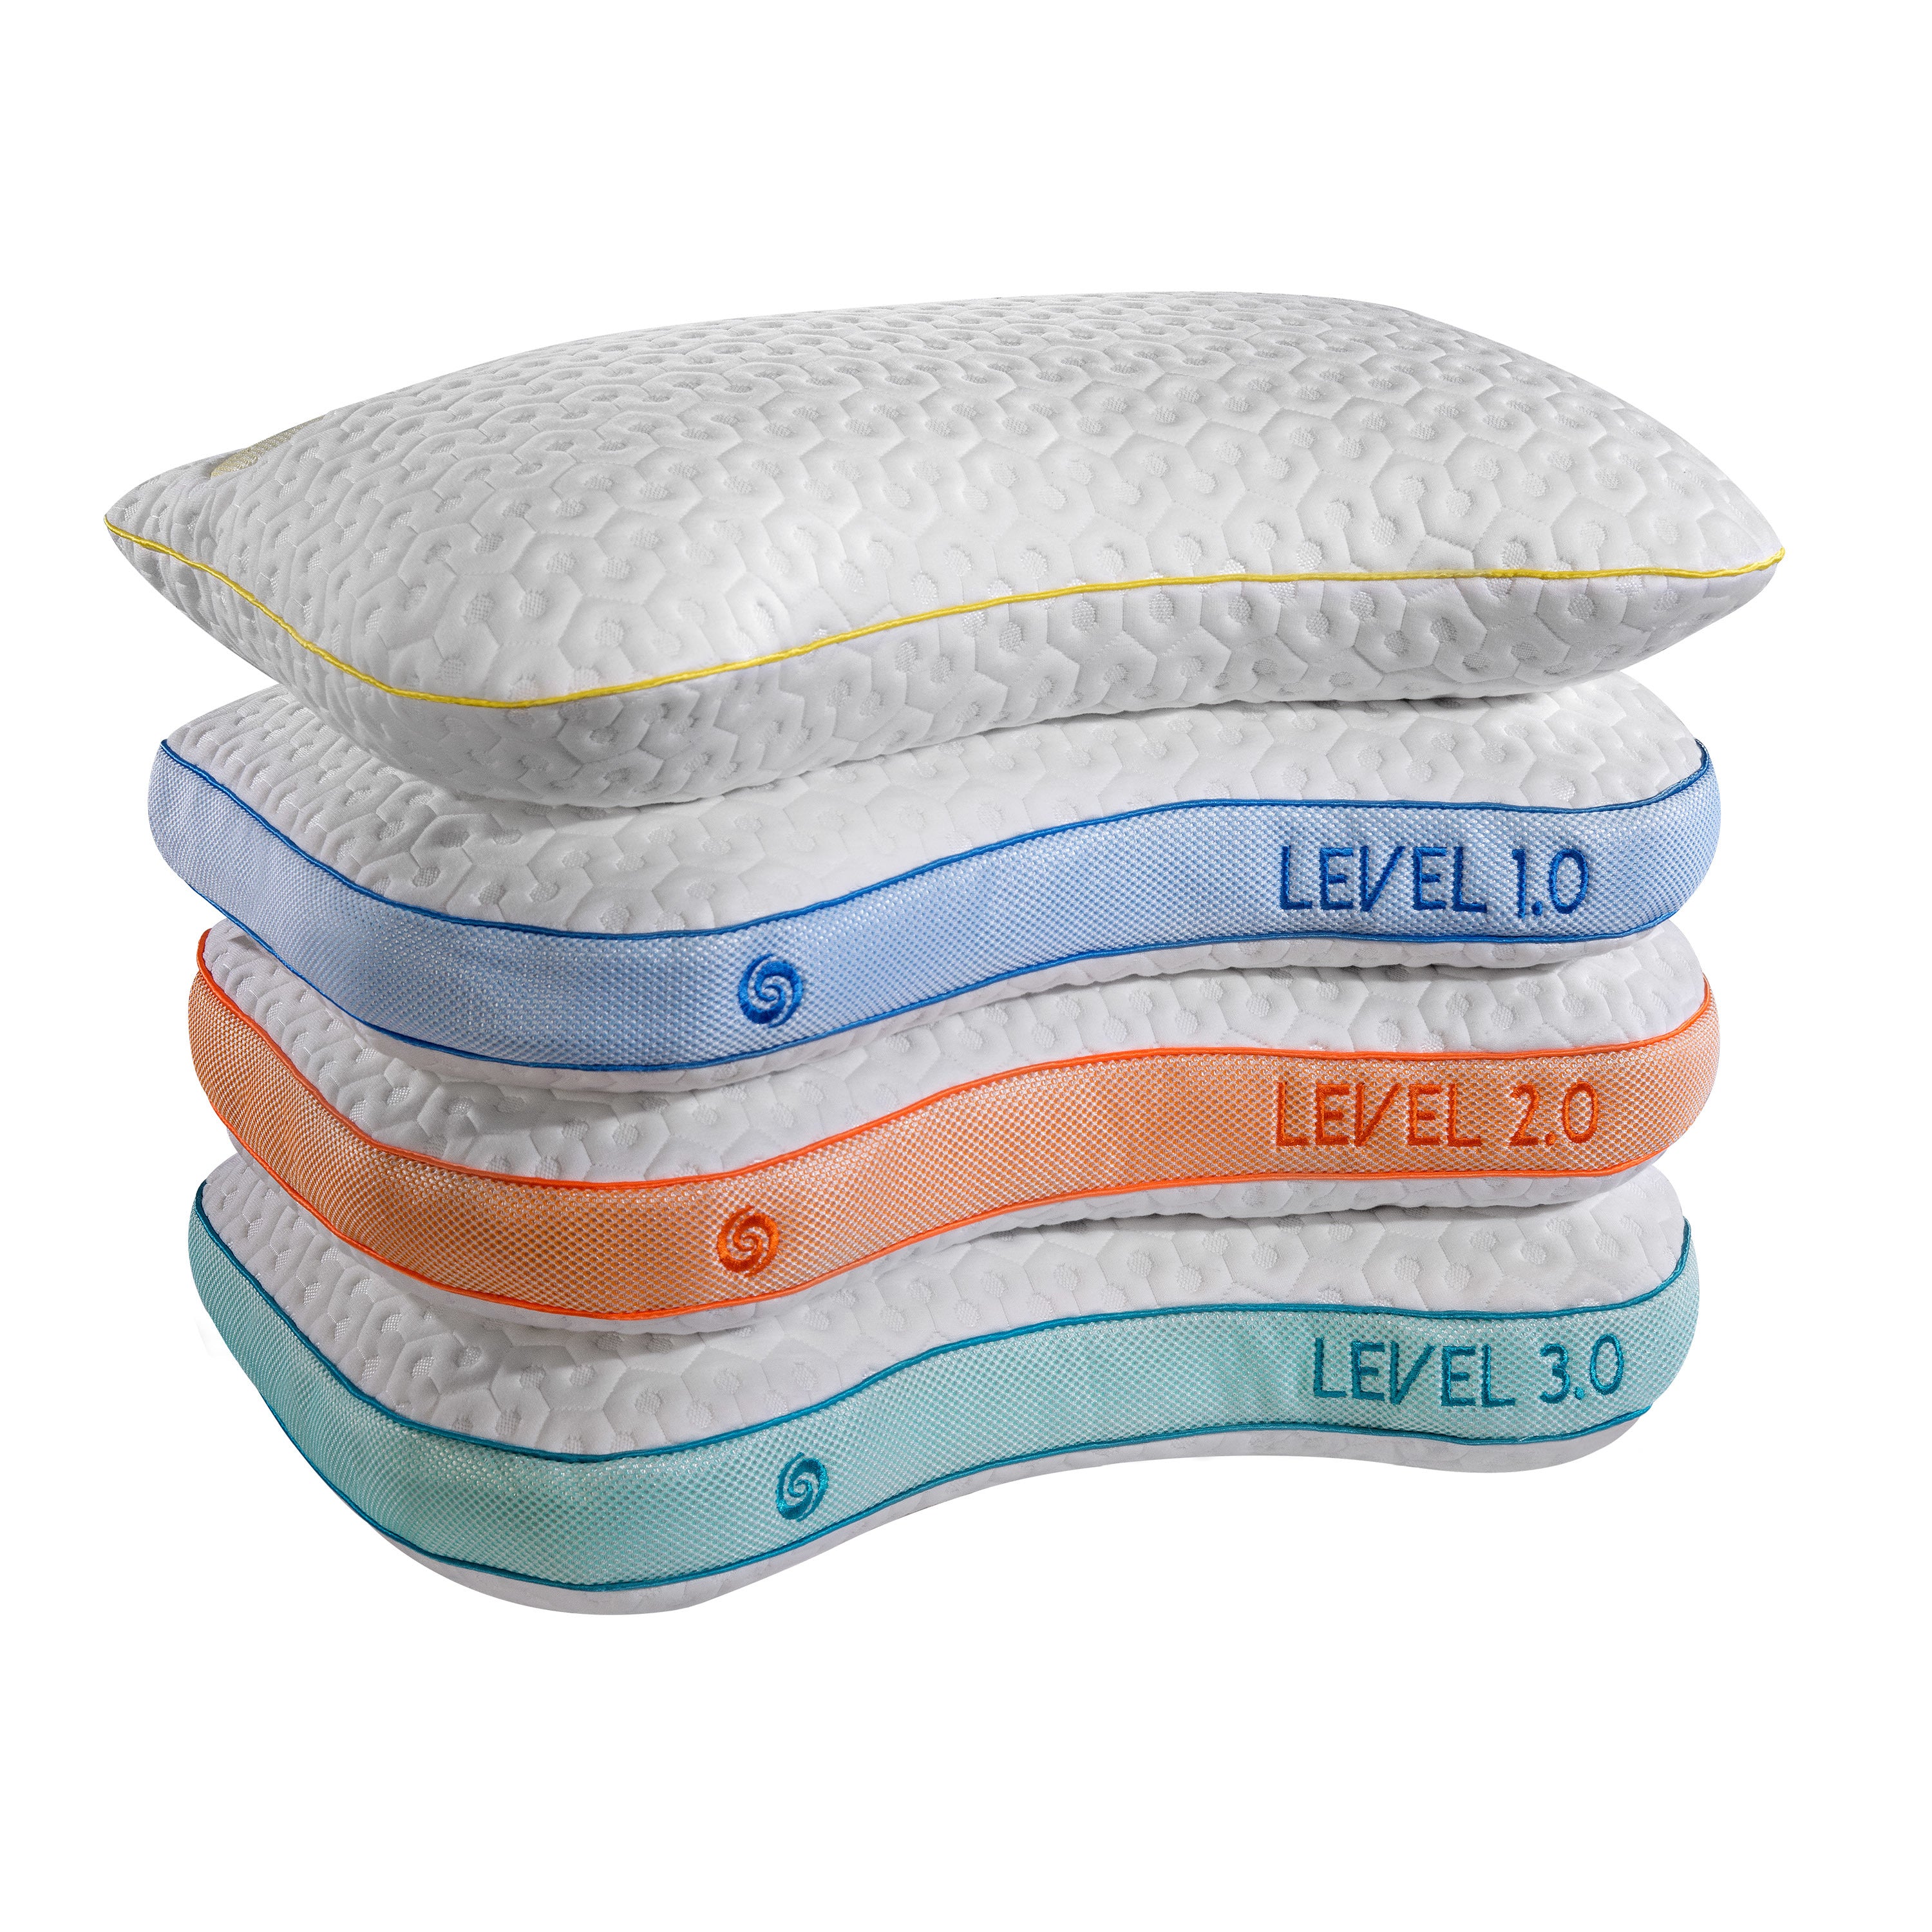 Bedgear Level 3.0 Pillow | Bedgear 3.0 Pillow